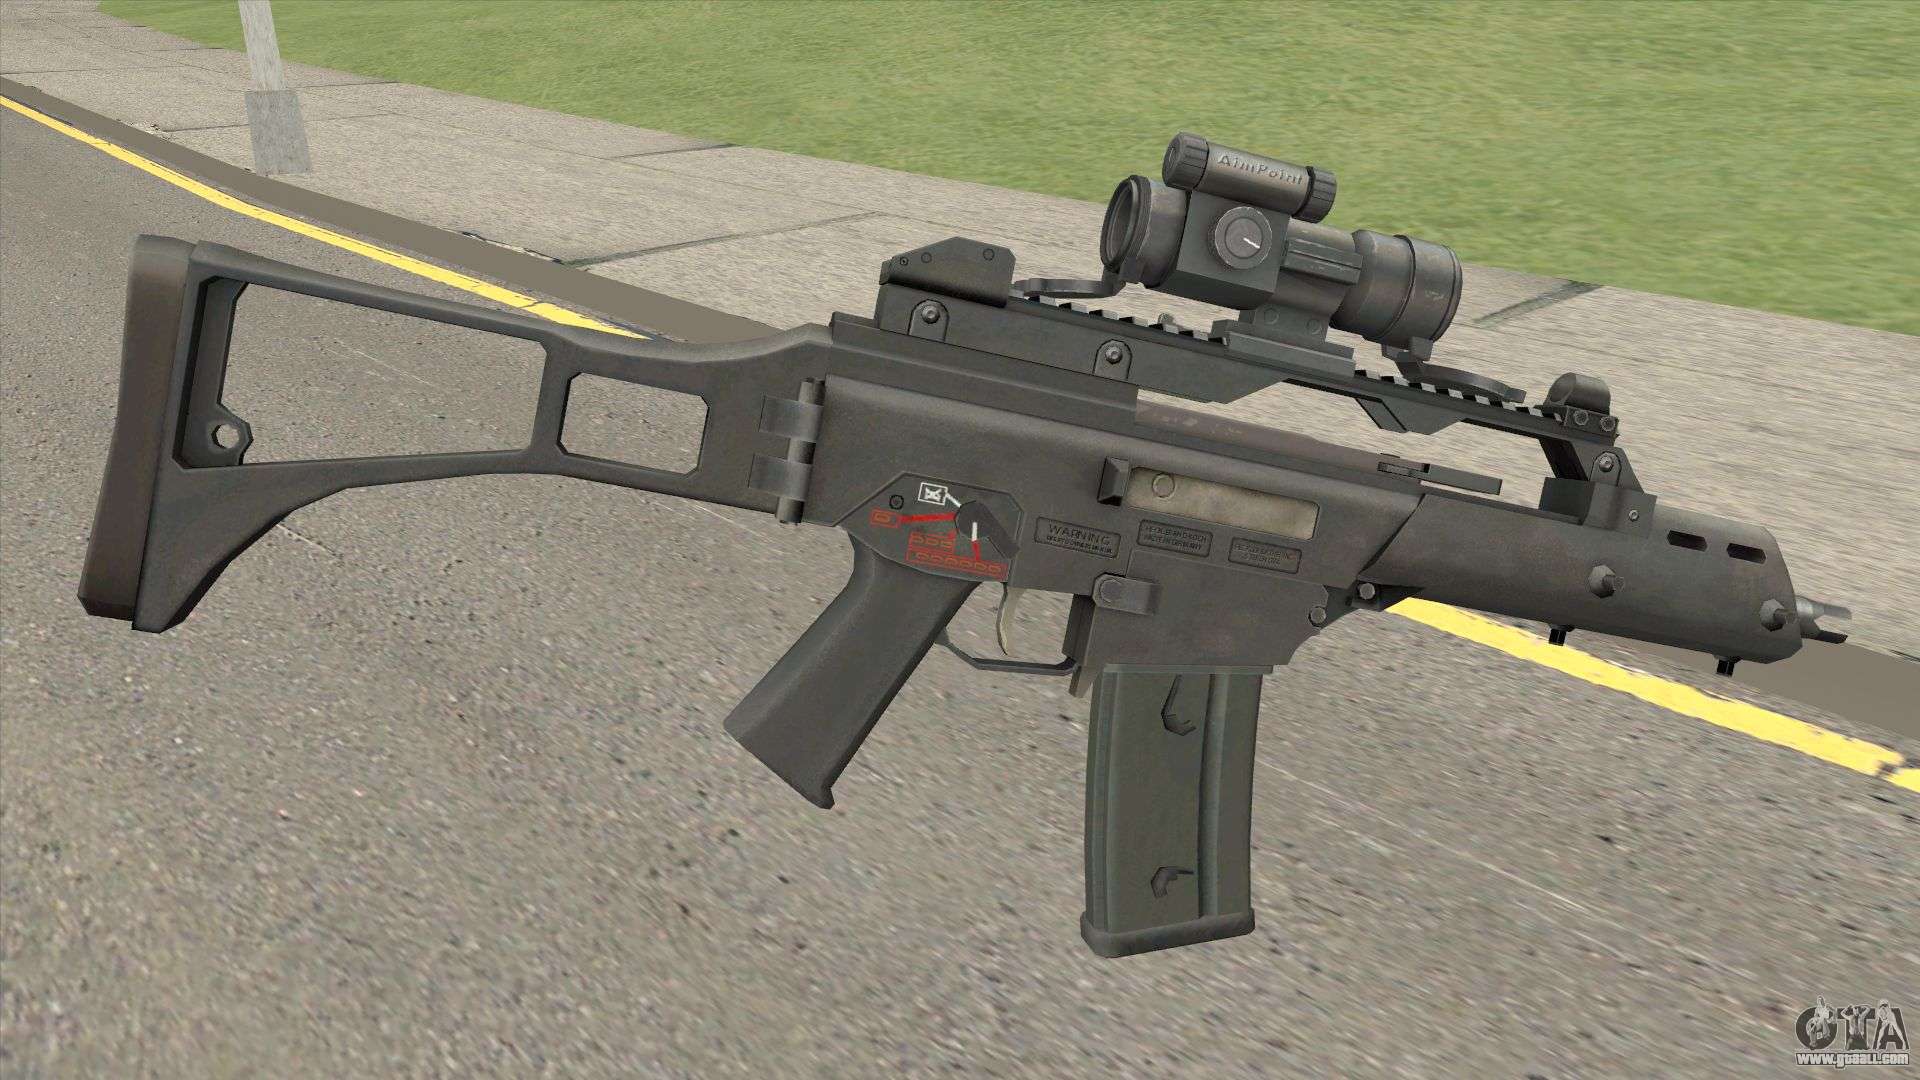 G 36 c. GTA HK g36c. G36. Оружие g36c с прицелом. G36 для ГТА СП.